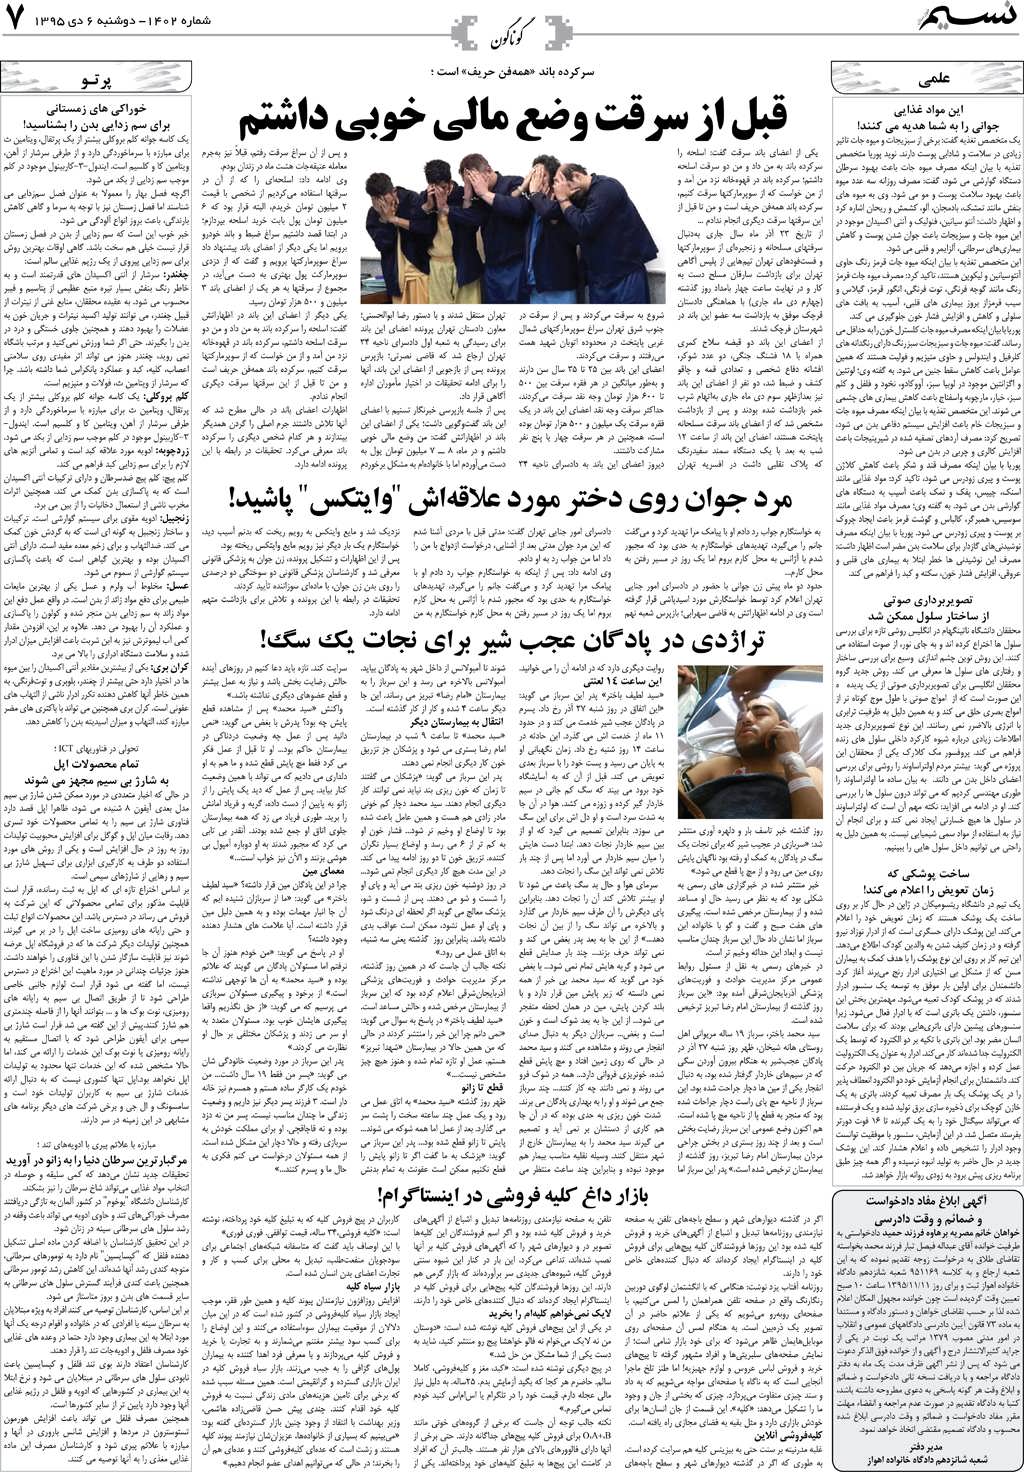 صفحه گوناگون روزنامه نسیم شماره 1402